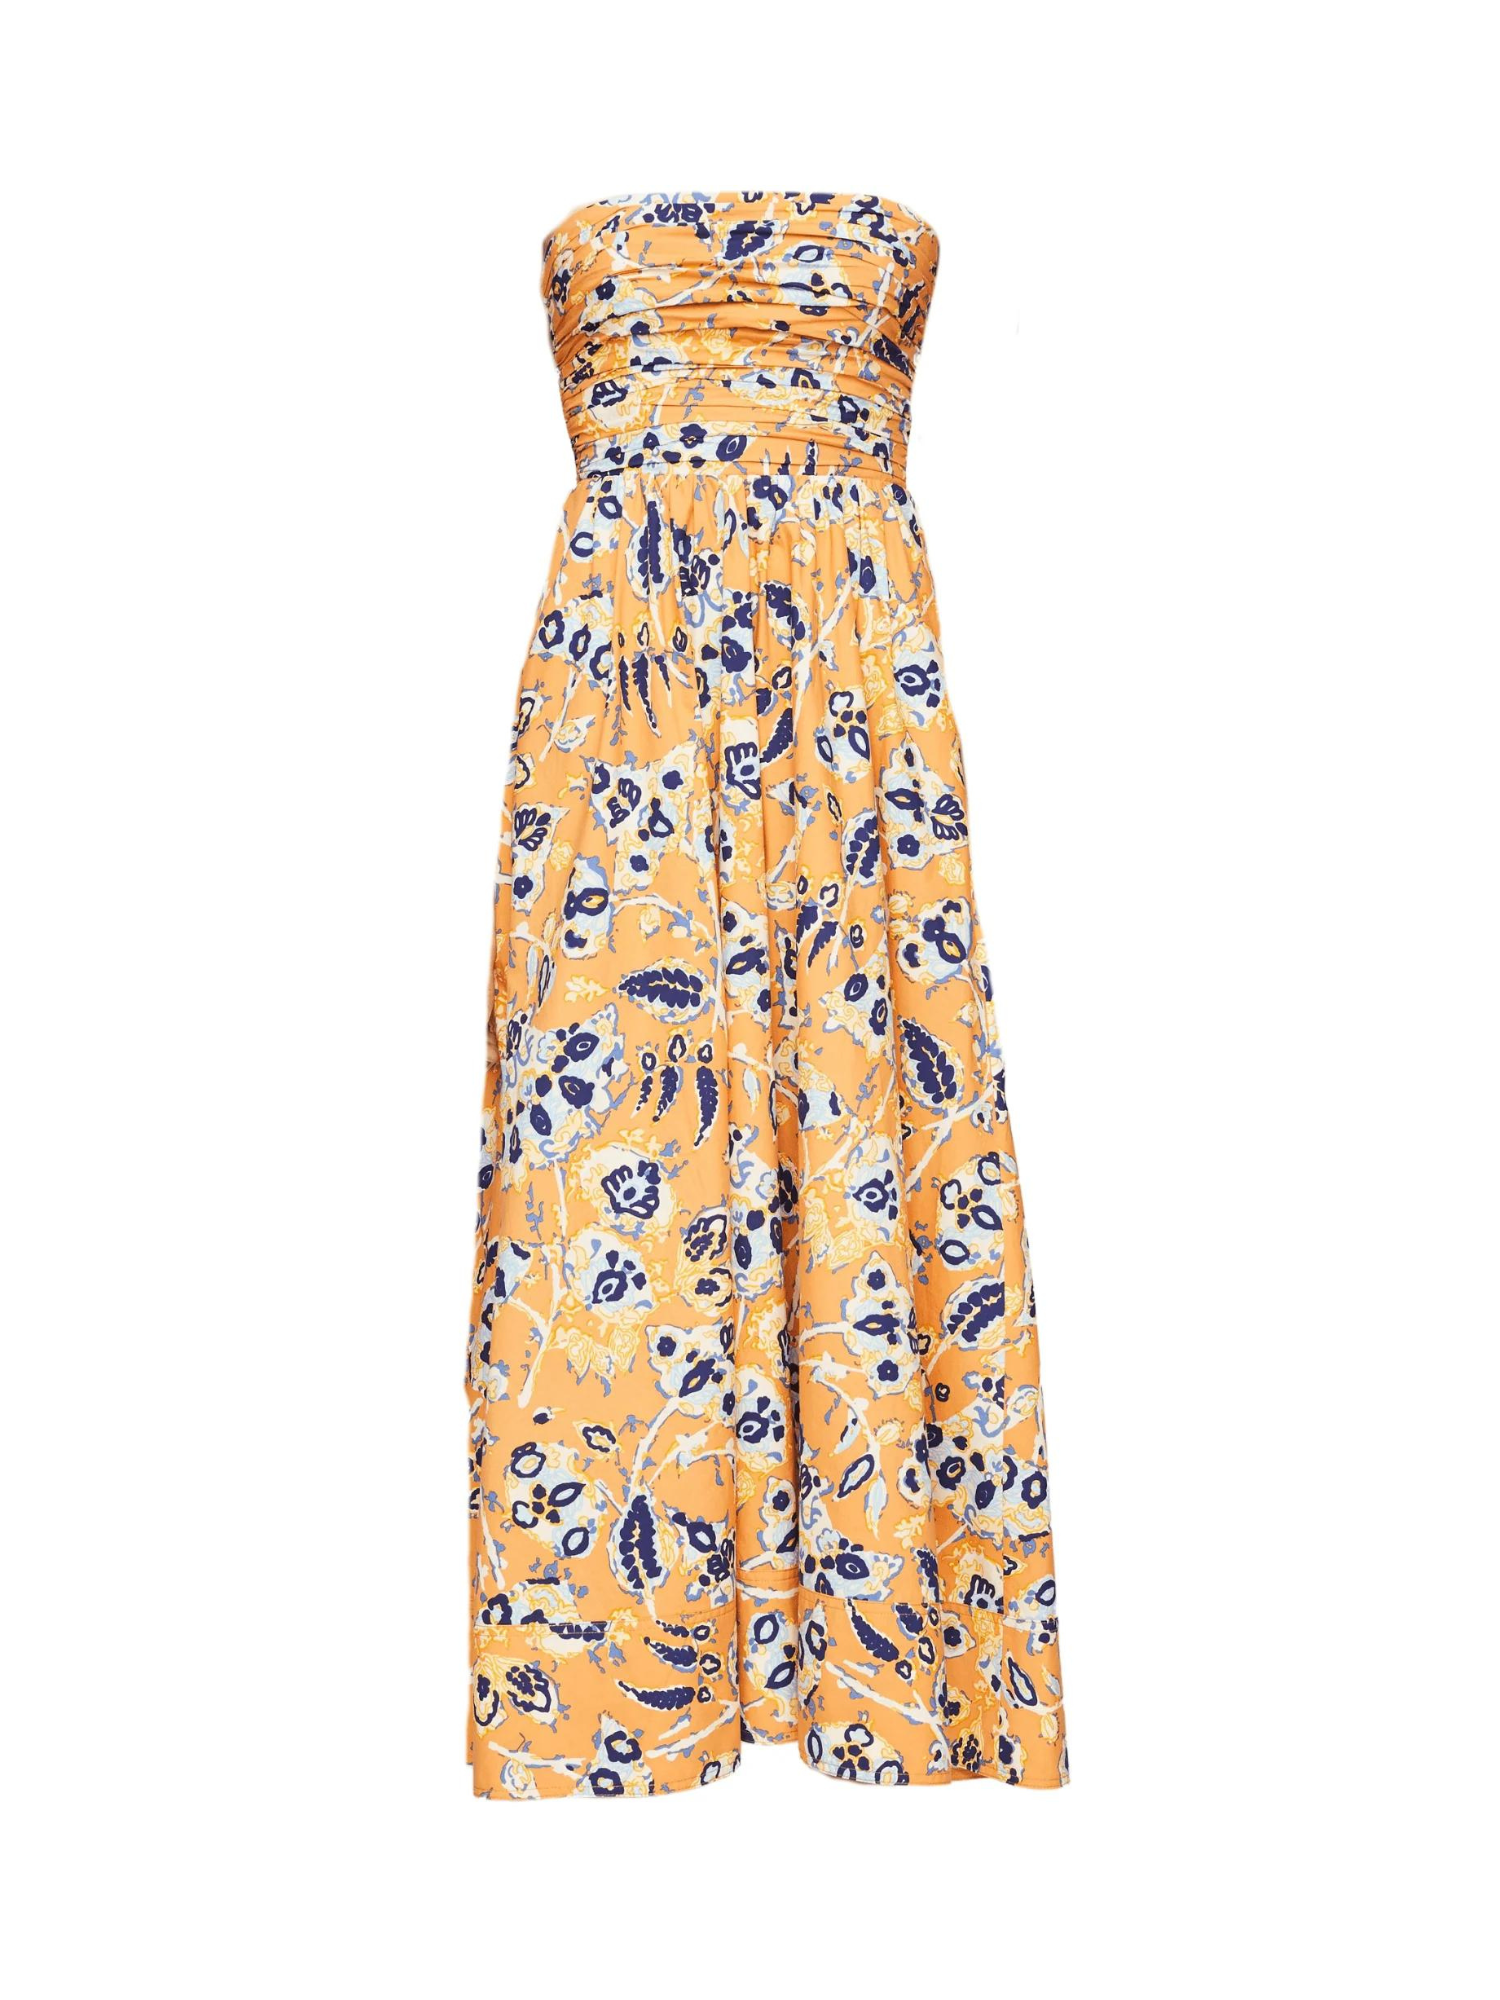 A.L.C. Tate Dress in Golden Poppy Multi